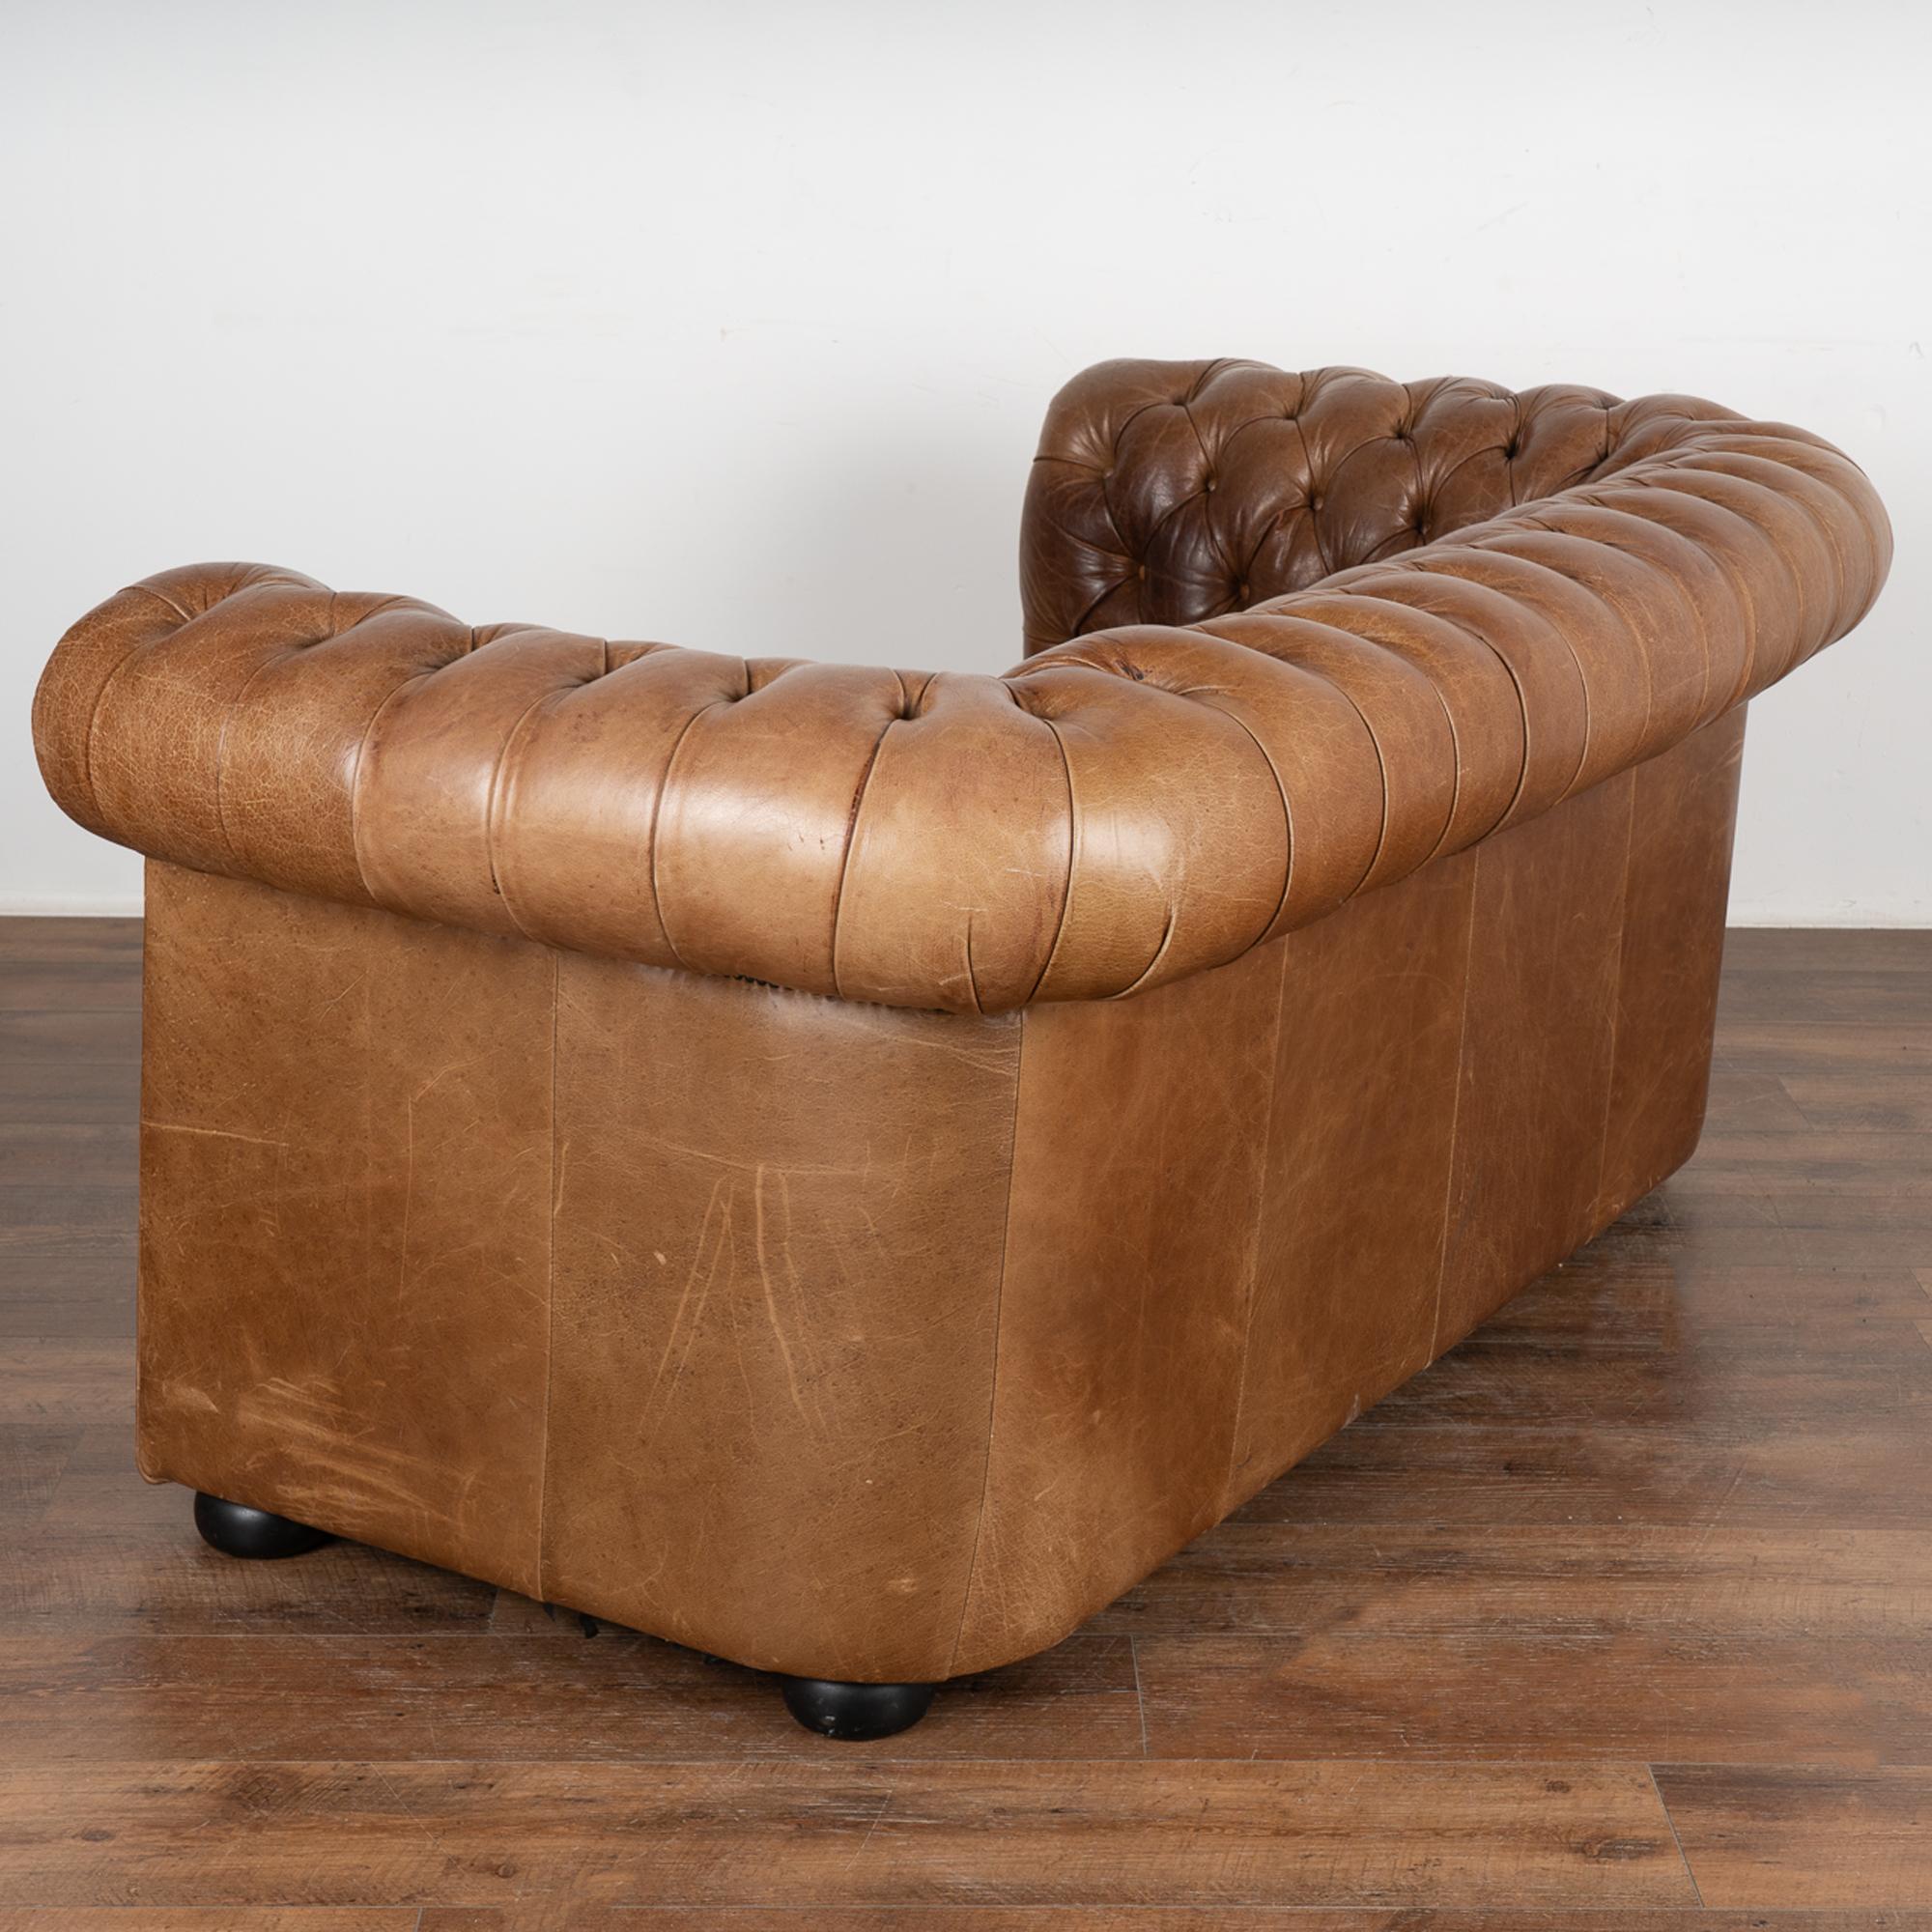 Pair, Brown Leather Chesterfield 2 Seat Sofa & Club Chair, Denmark circa 1960-70 6